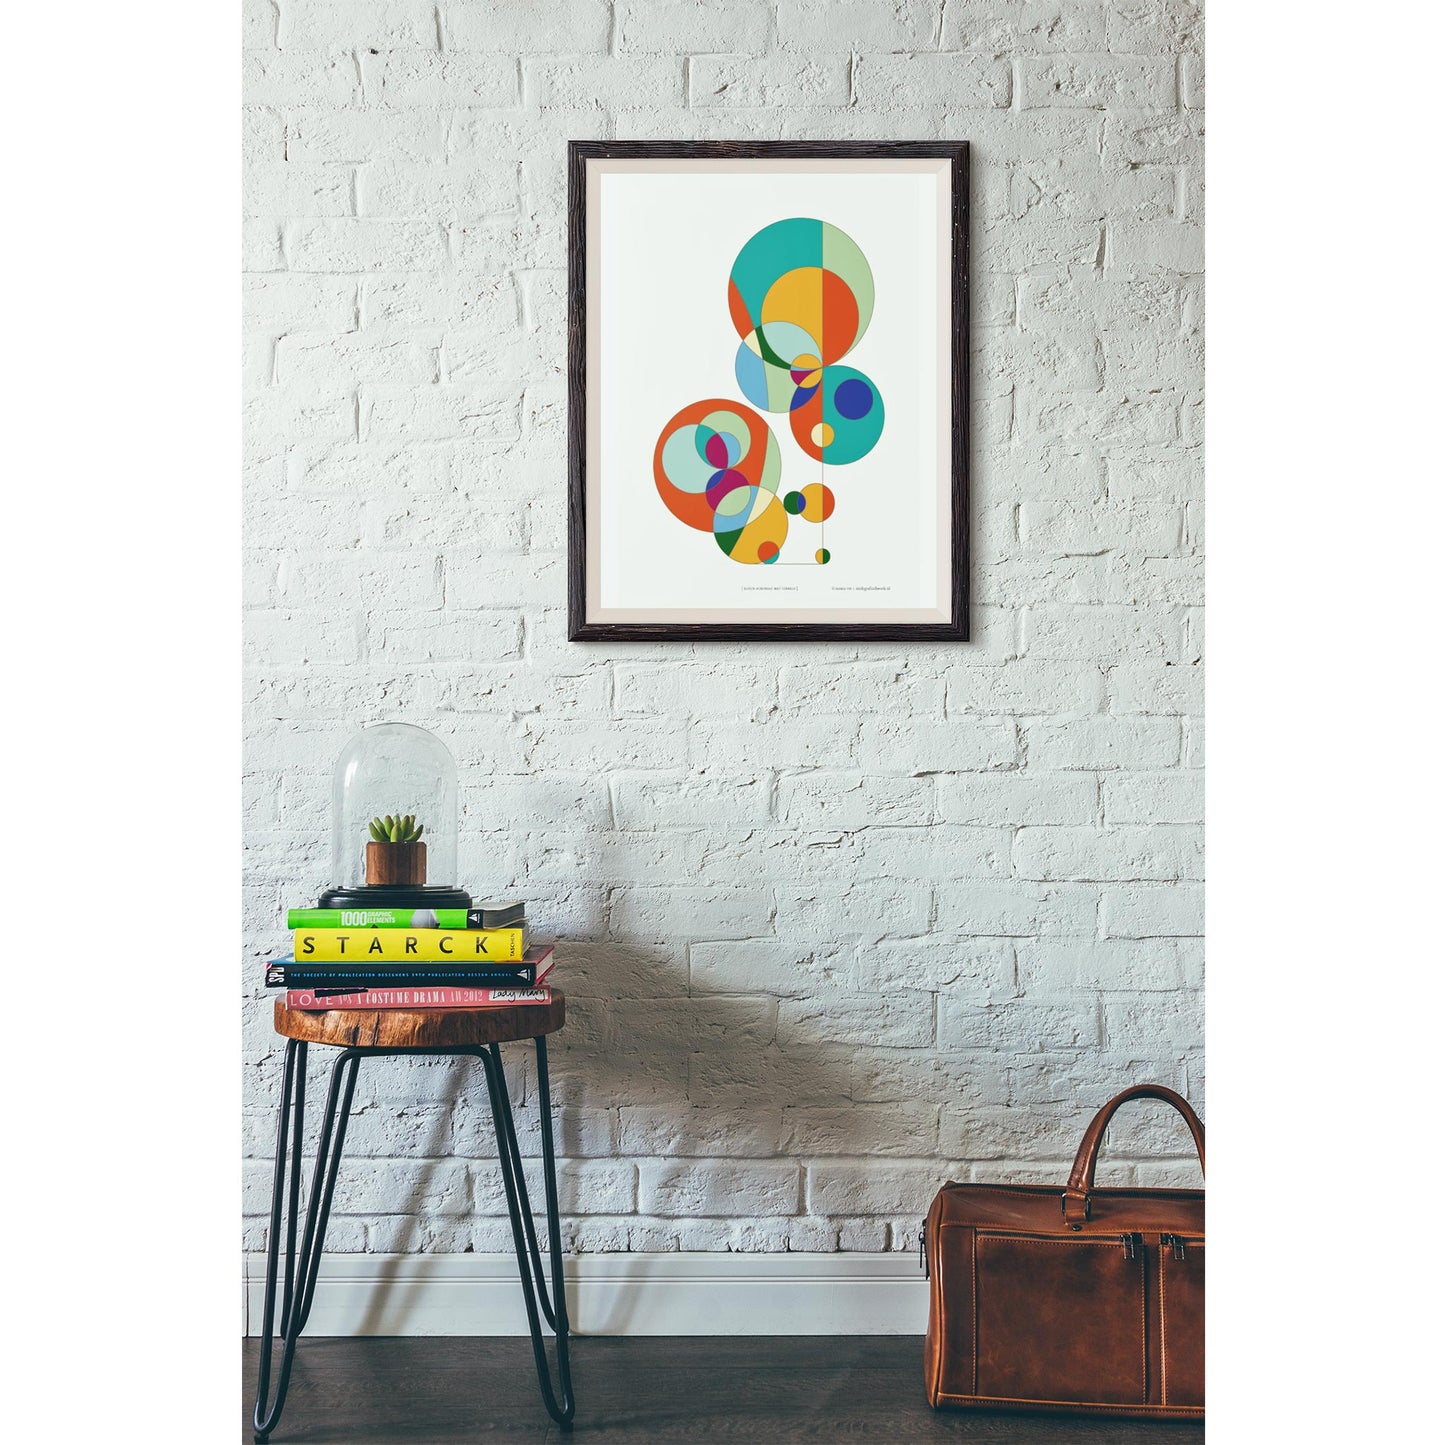 Productafbeelding poster "kleur-acrobaat met cirkels" een impressie hangend aan een wand in een interieur